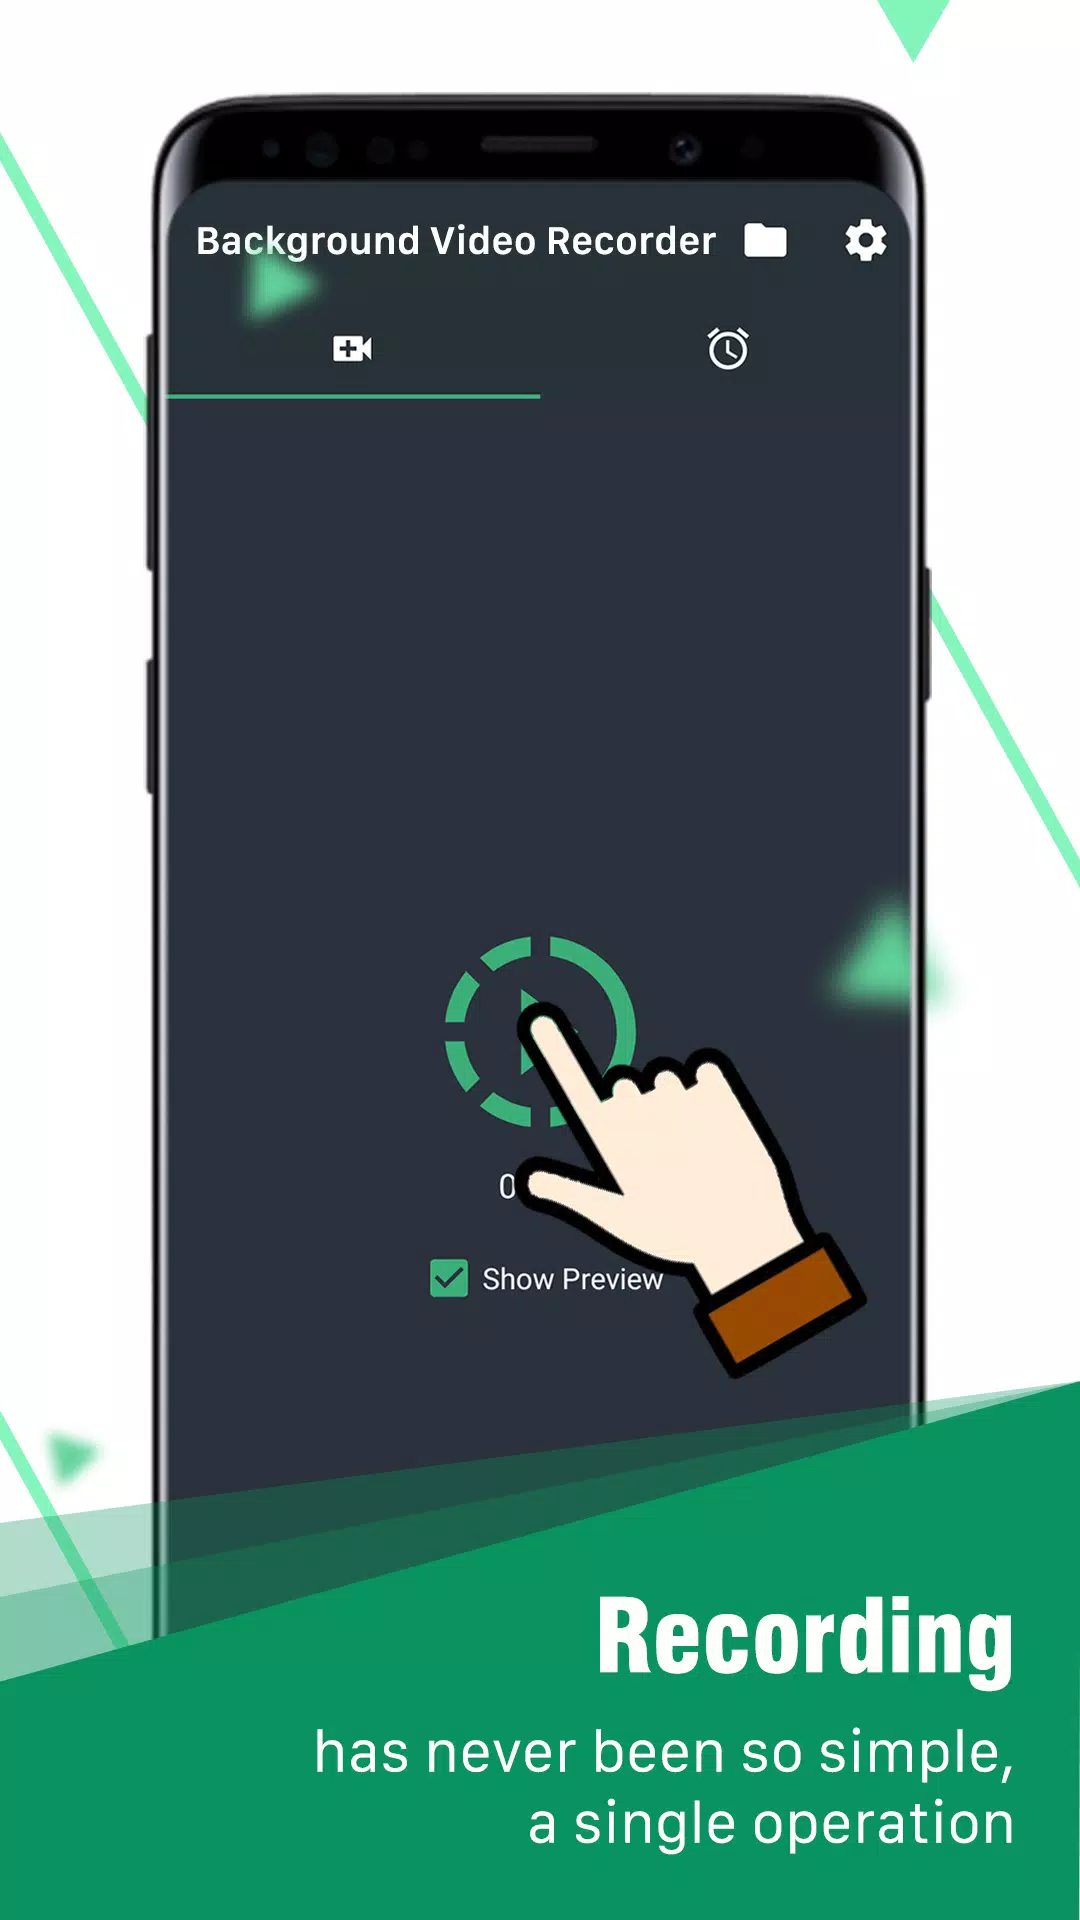 Tải ngay ứng dụng Background Video Recorder cho Android để ghi lại những khoảnh khắc quan trọng mà không cần sự chú ý của người khác. Hãy xem hình ảnh liên quan để biết thêm chi tiết về sản phẩm này.